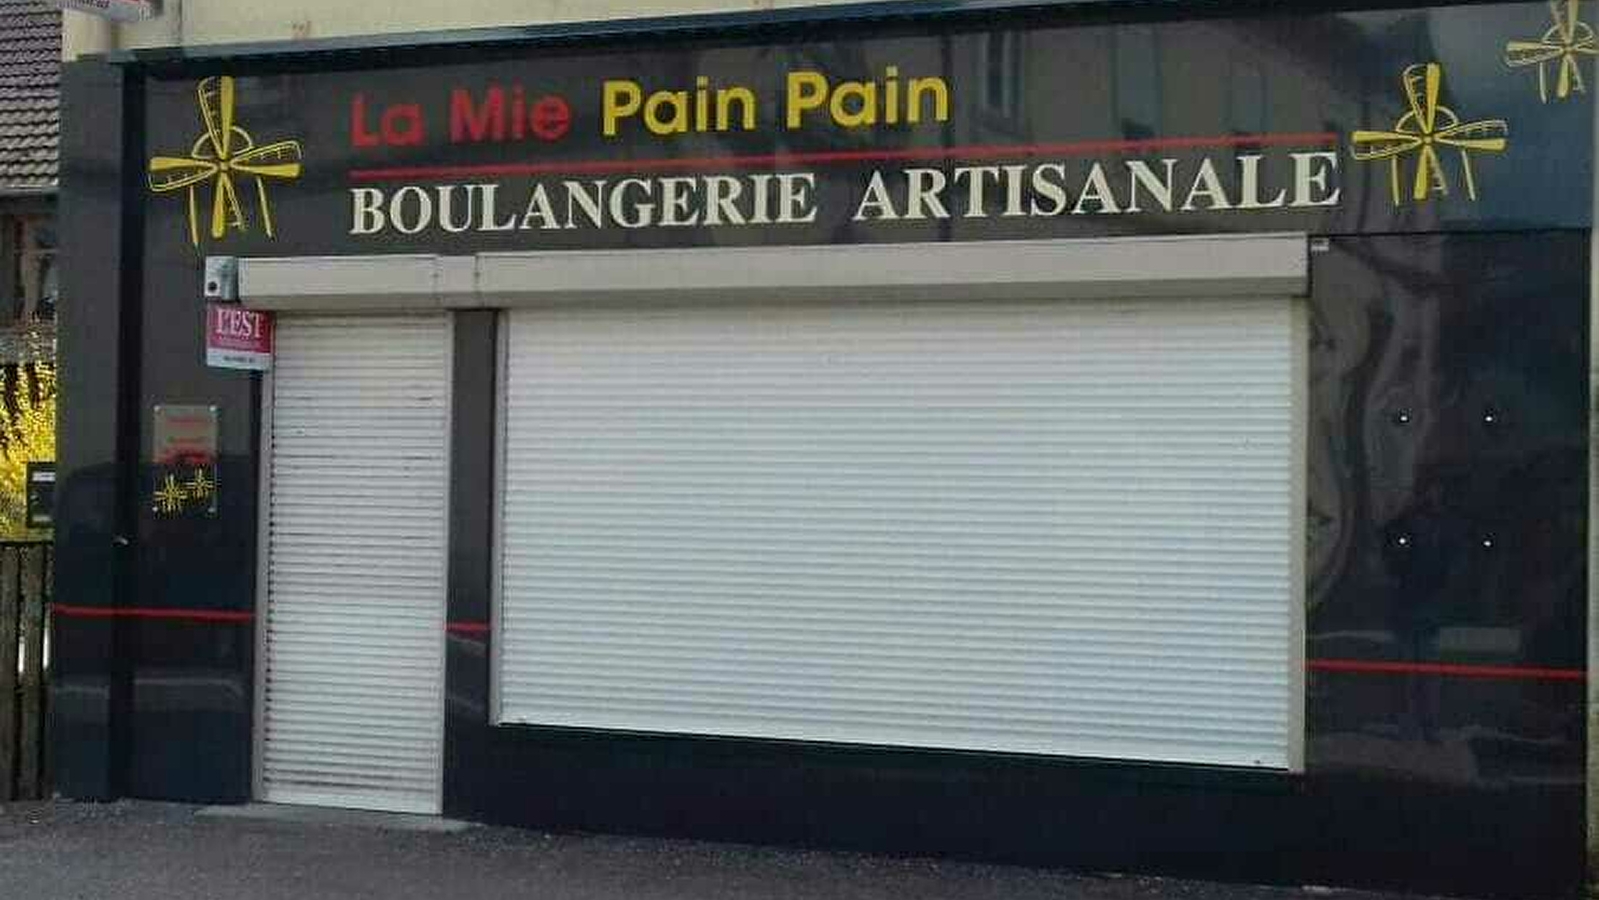 Boulangerie La Mie Pain Pain